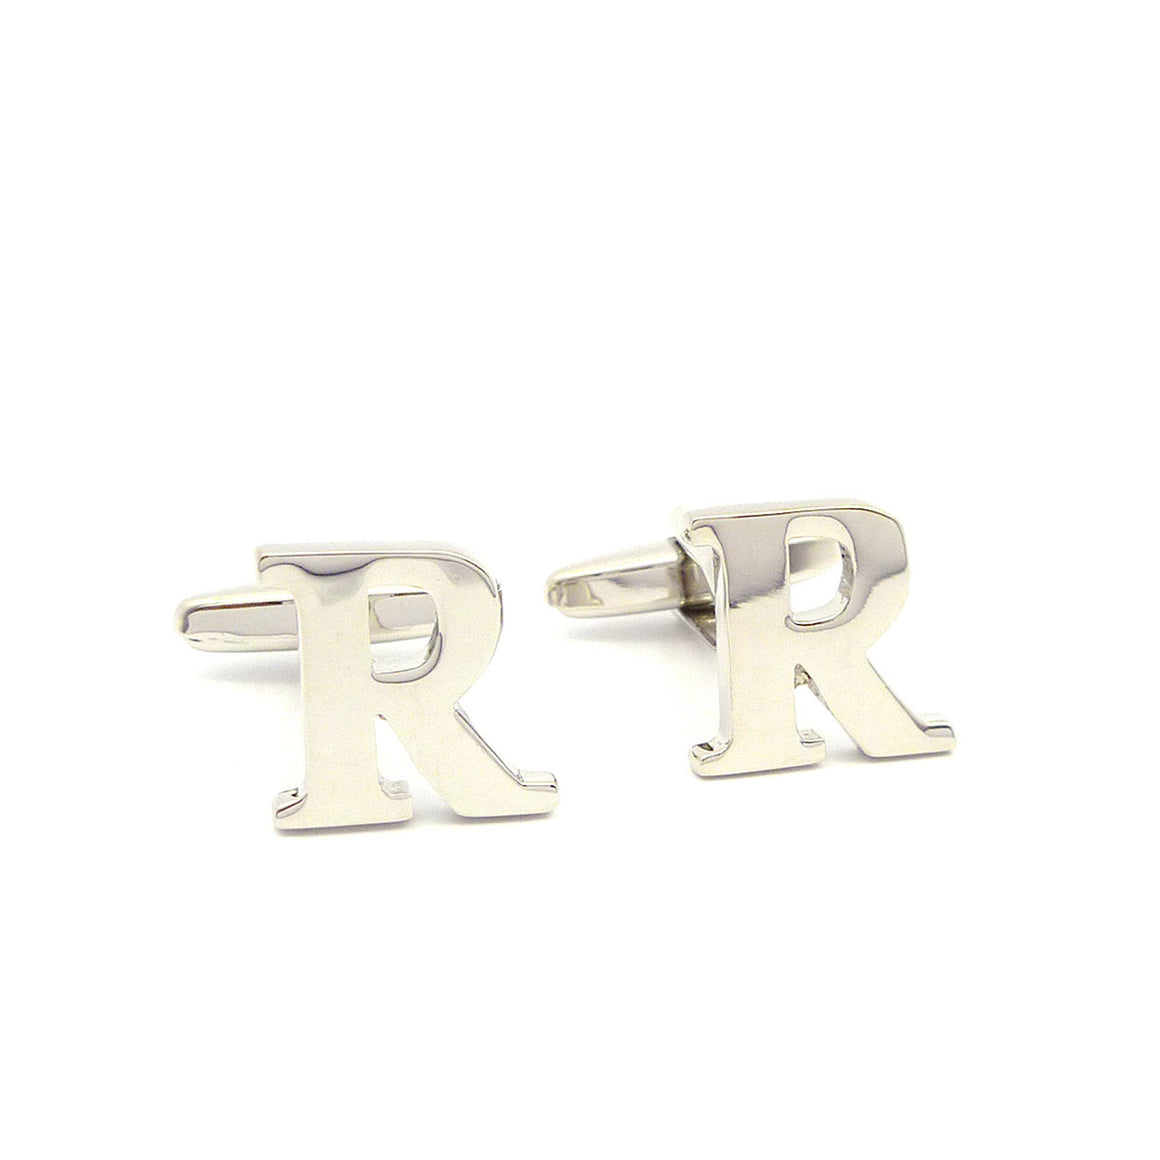 Wild Links - Silver Alphabet Letter "R" Cufflinks